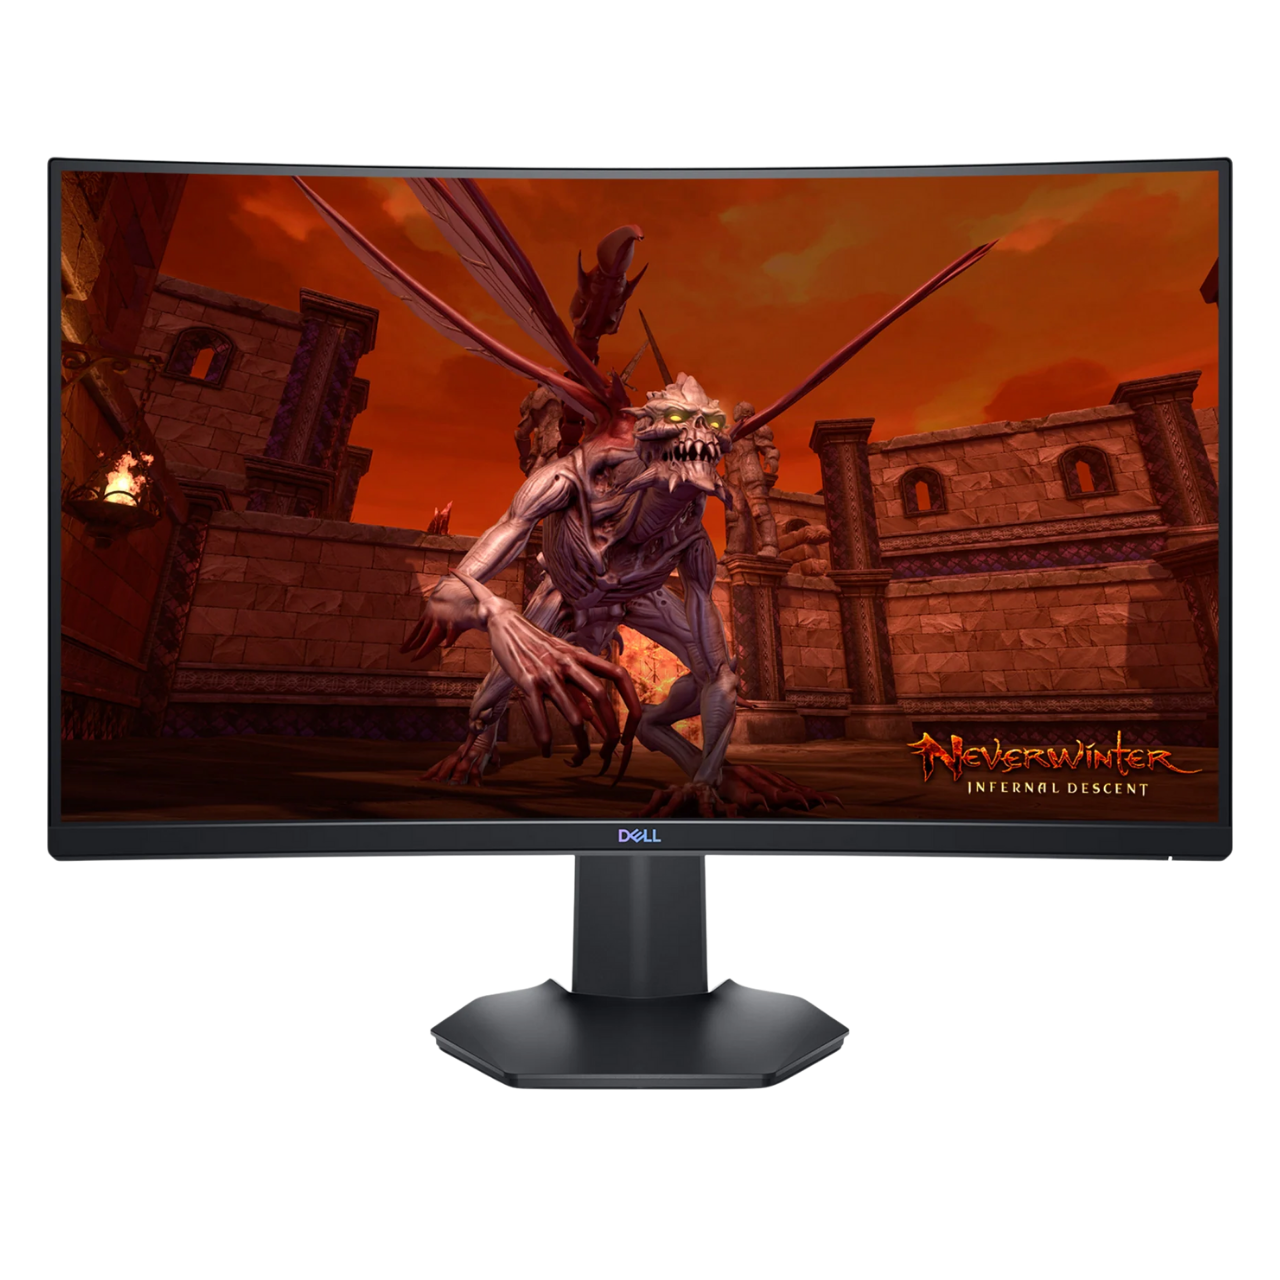 Économisez 30€ pour l'achat de cet excellent écran PC gamer LG 24